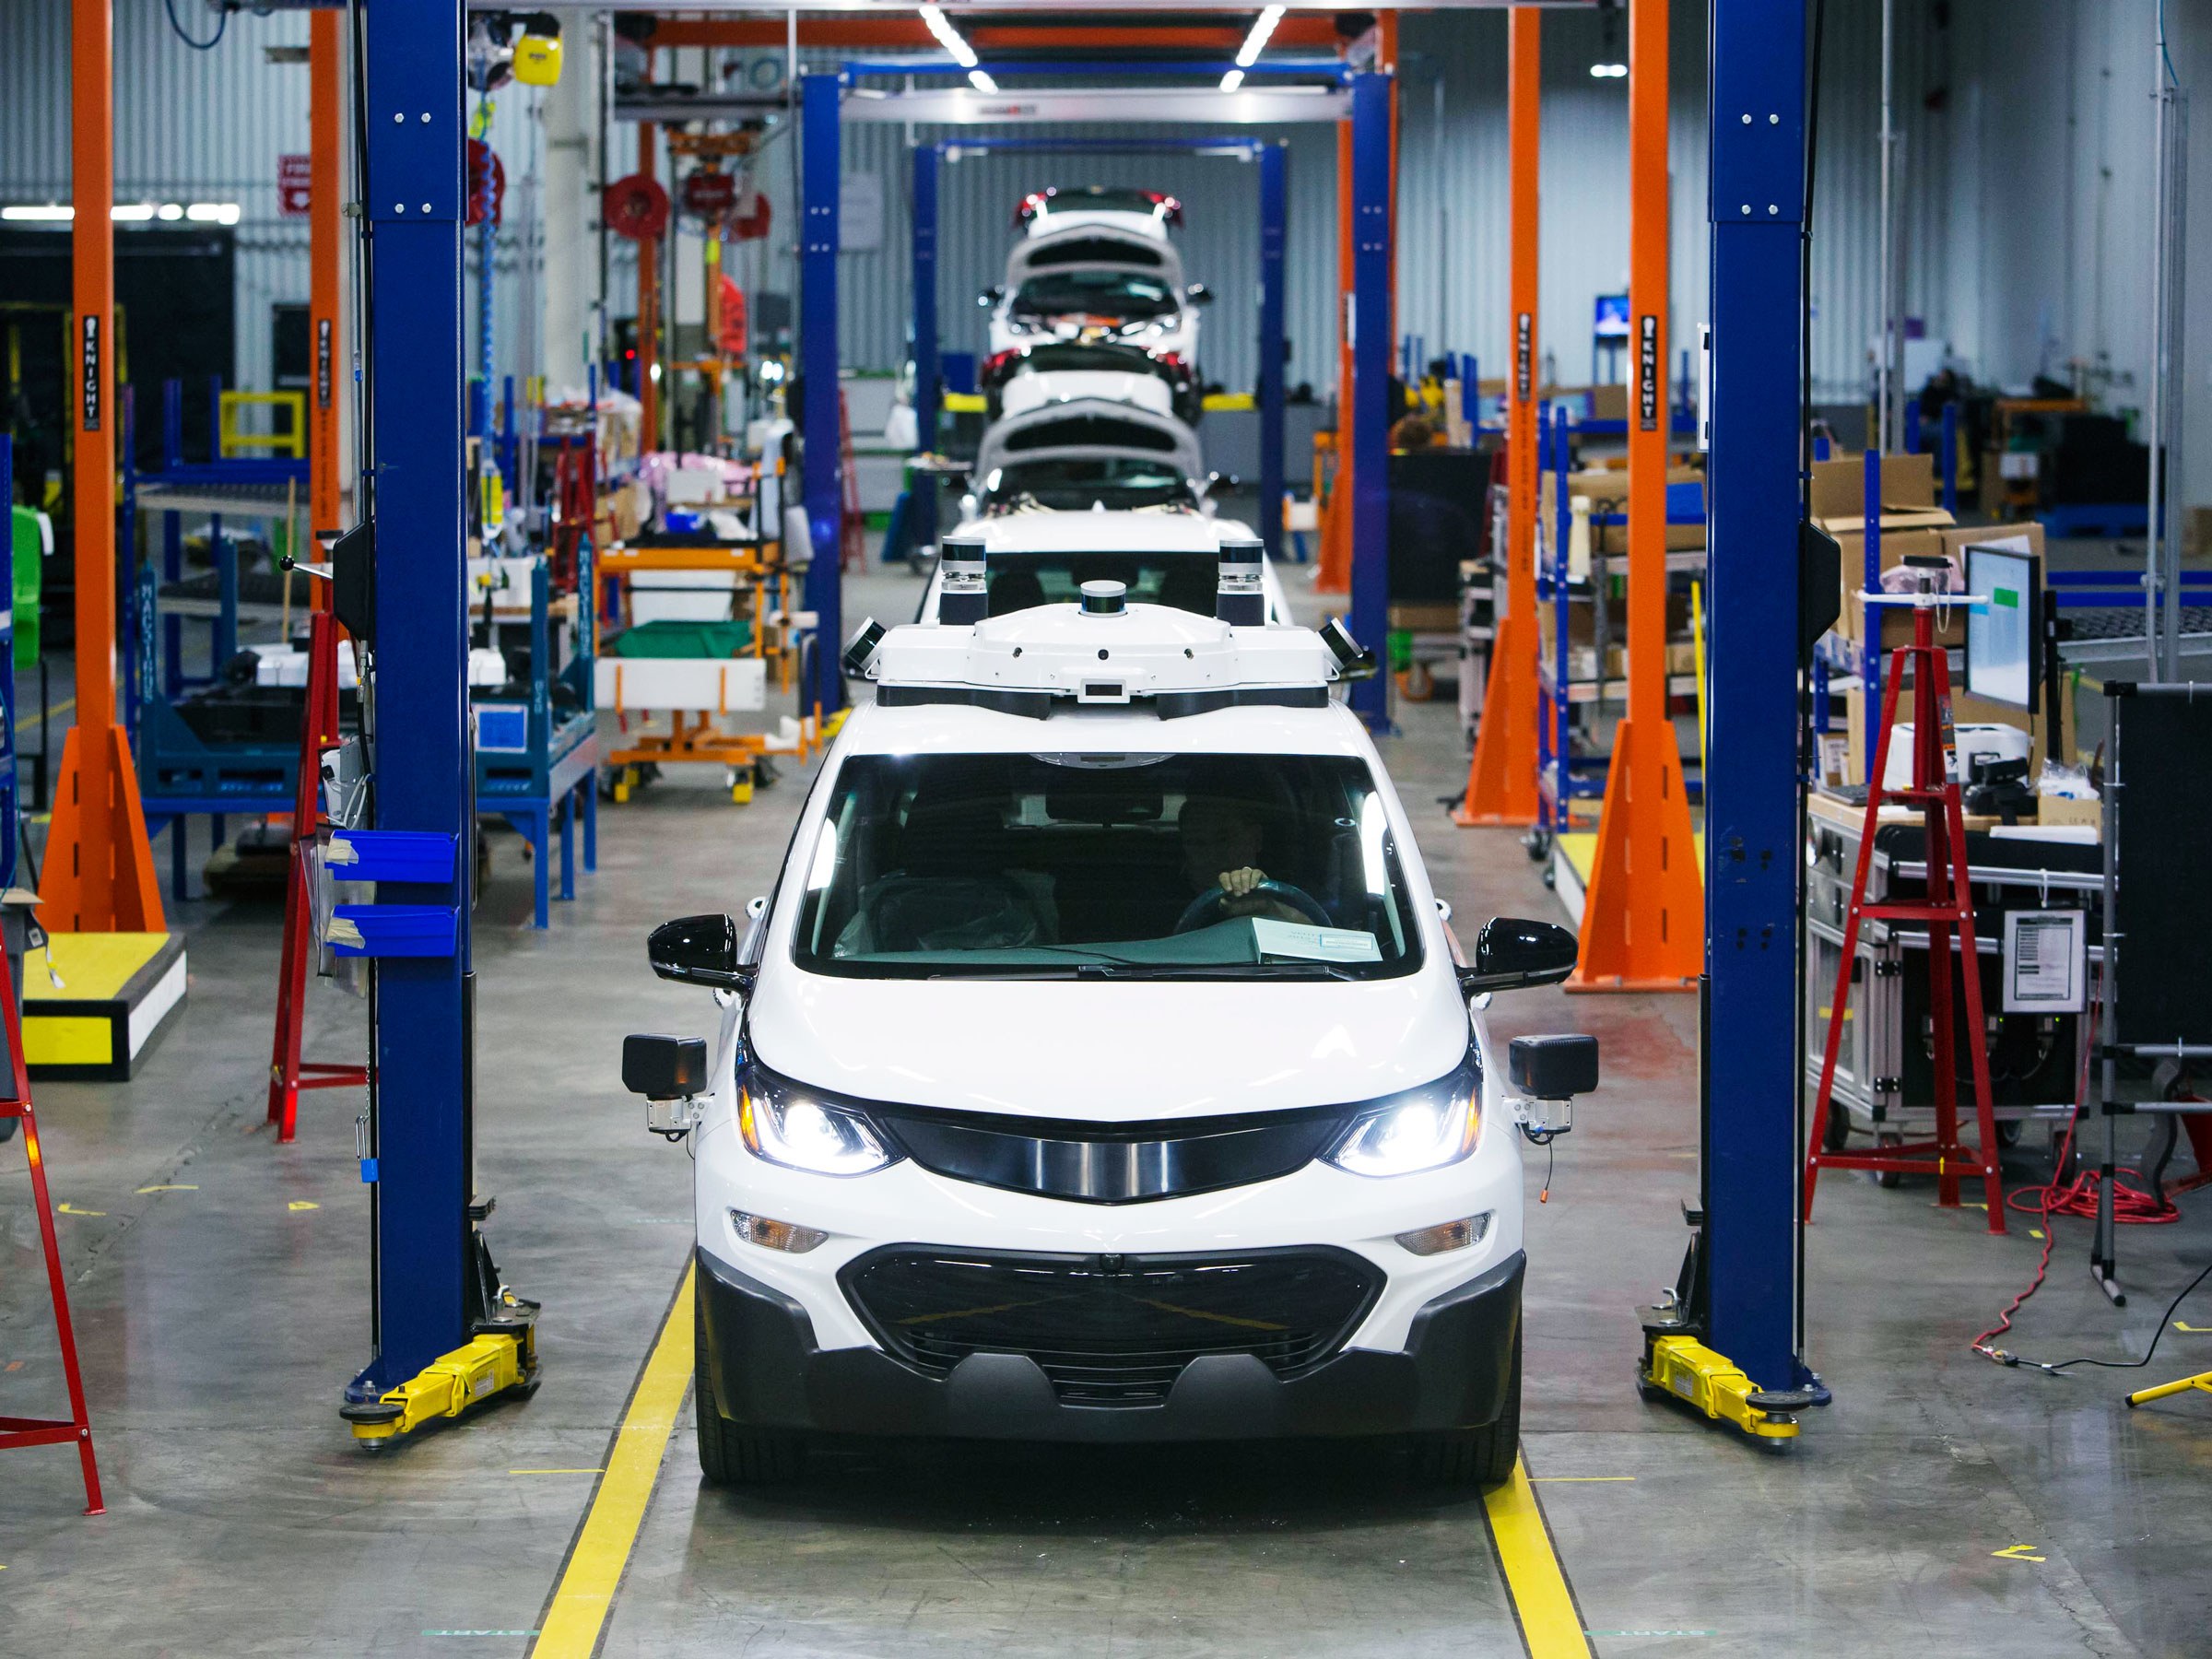 Las tres plantas beneficiadas con la inversión de General Motors son: Gravataí, Sao Caetano do Sul y Joinville.